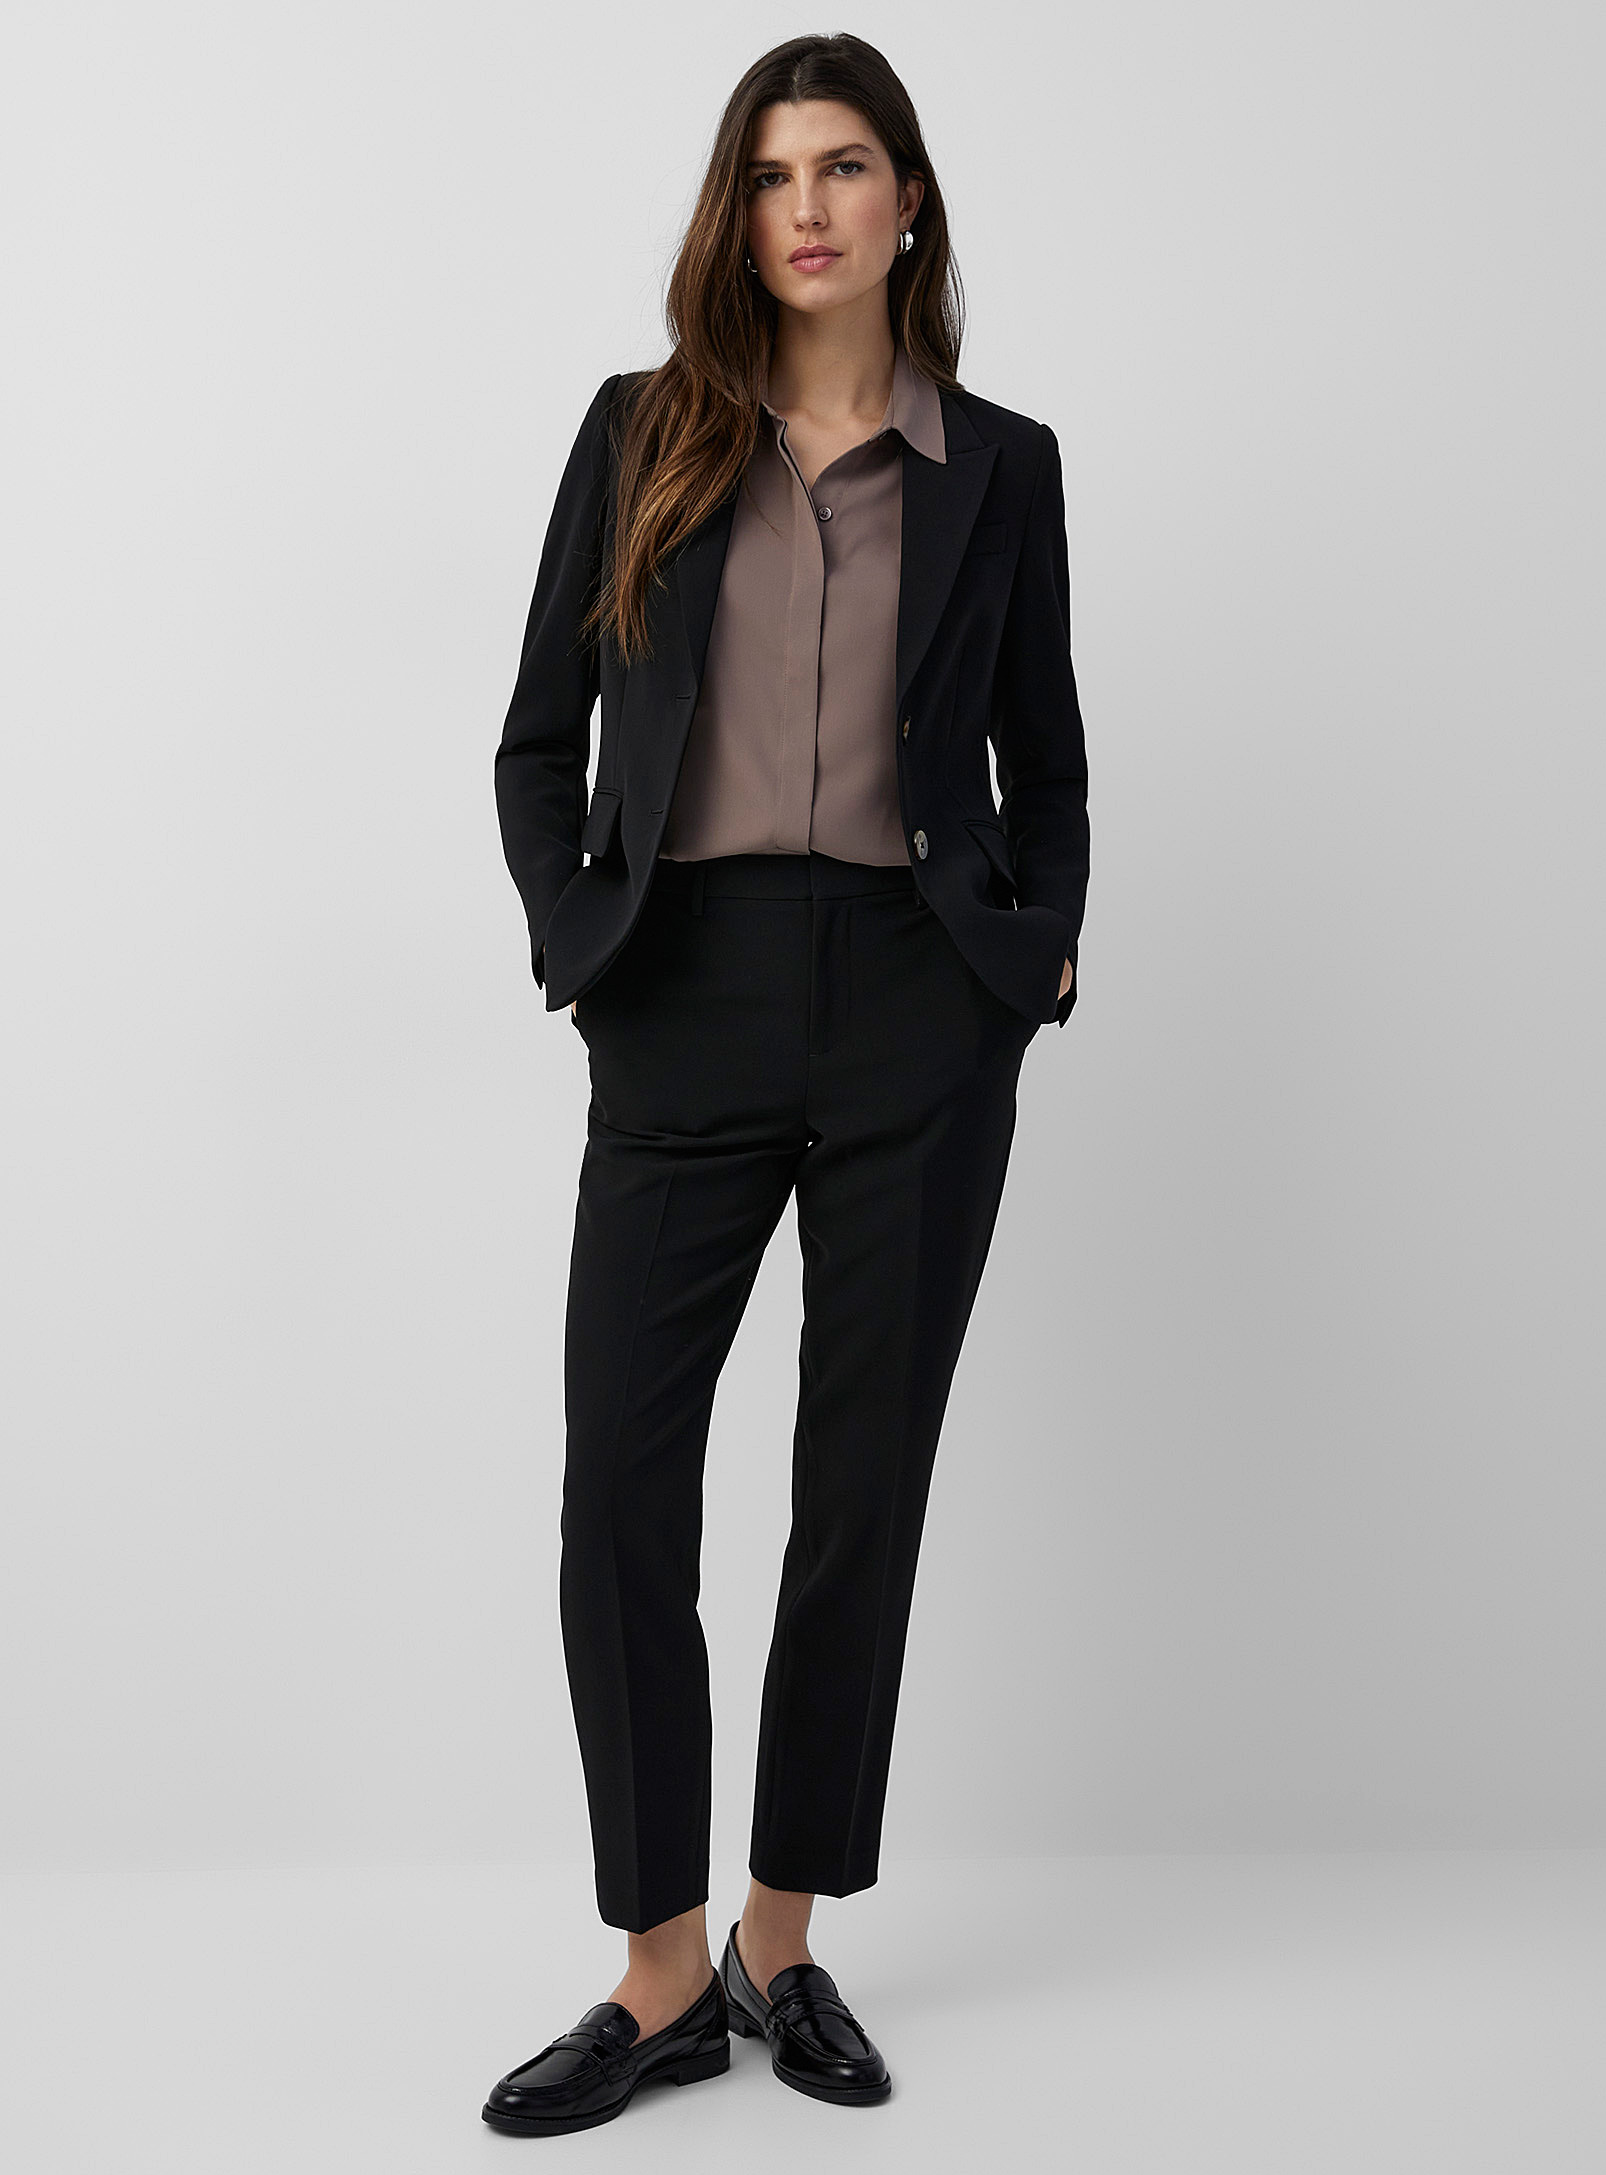 Contemporaine Suiting Crepe Semi-slim Pant In Black